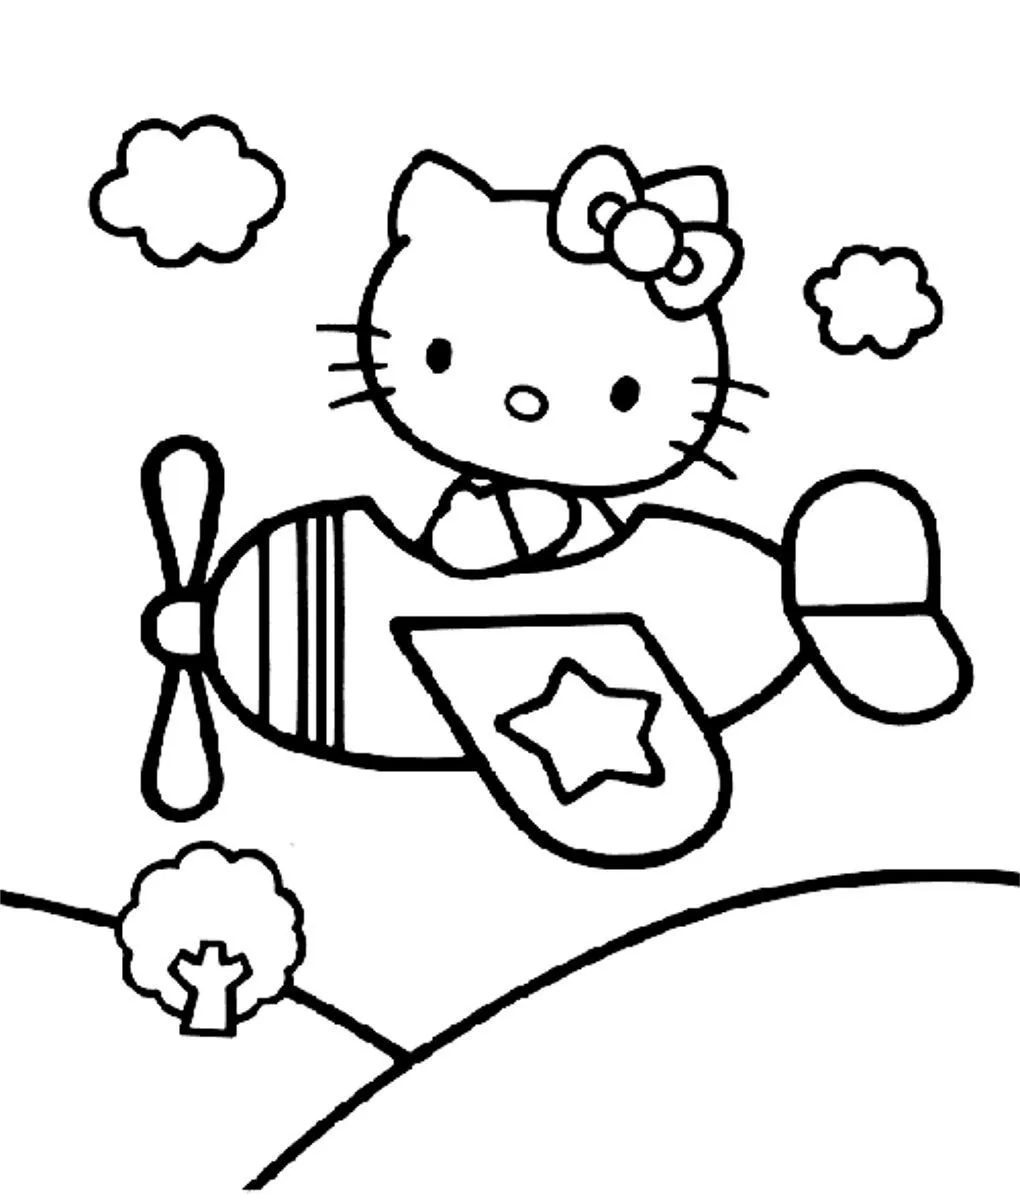 Cara hello kitty para pintar - Dibujos para colorear - IMAGIXS